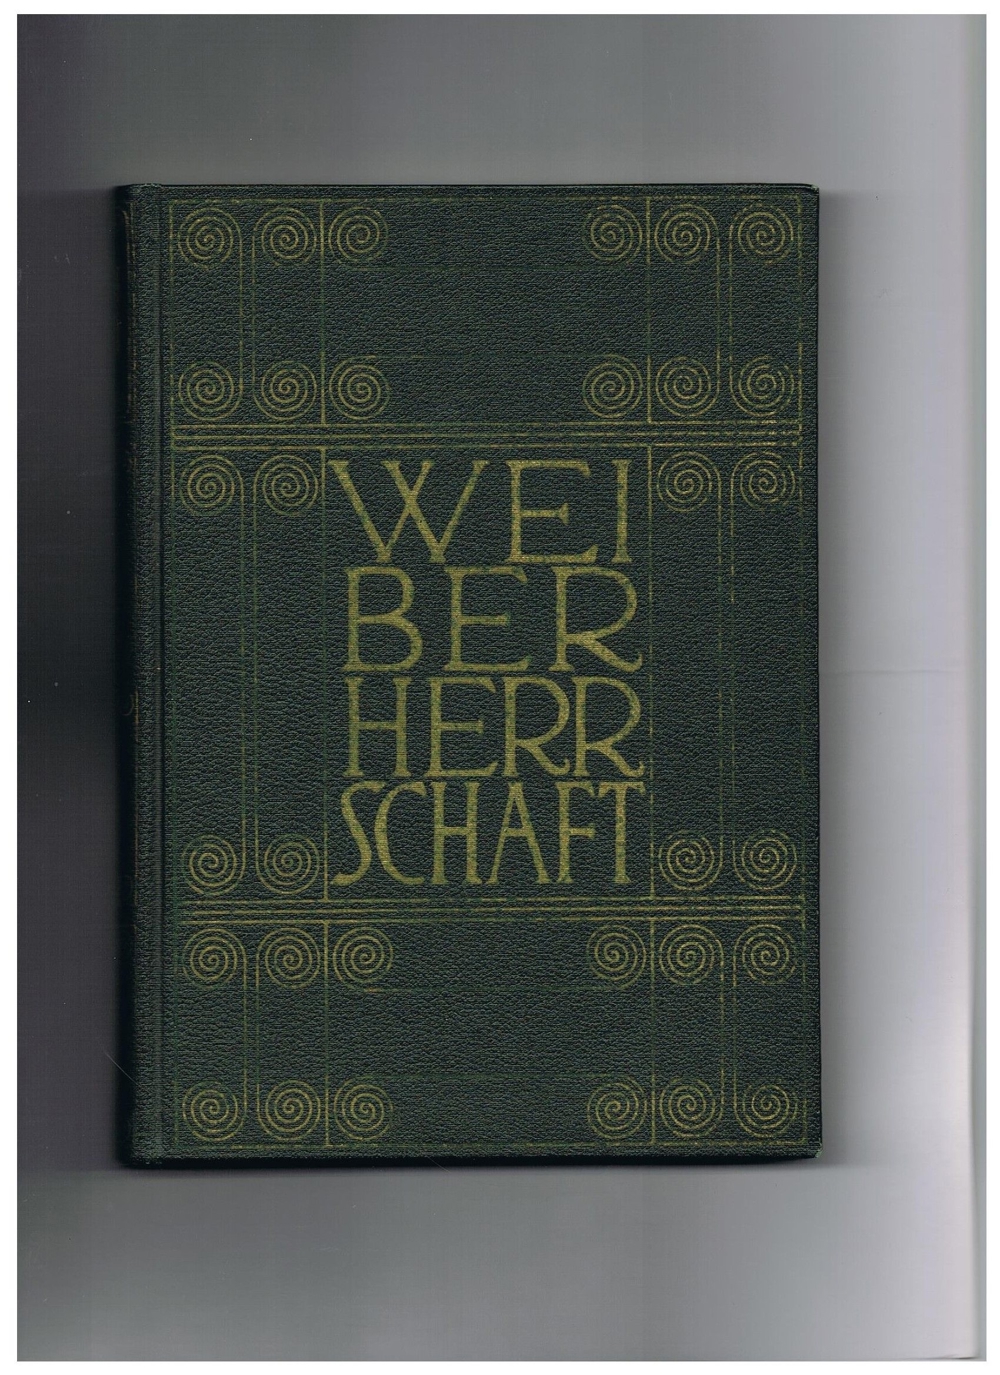 Weiberherrschaft,Erotische Literatur,3 Bände,Leipzig 1909,Privatdruck des Verlegers Auflage 650 Stk.